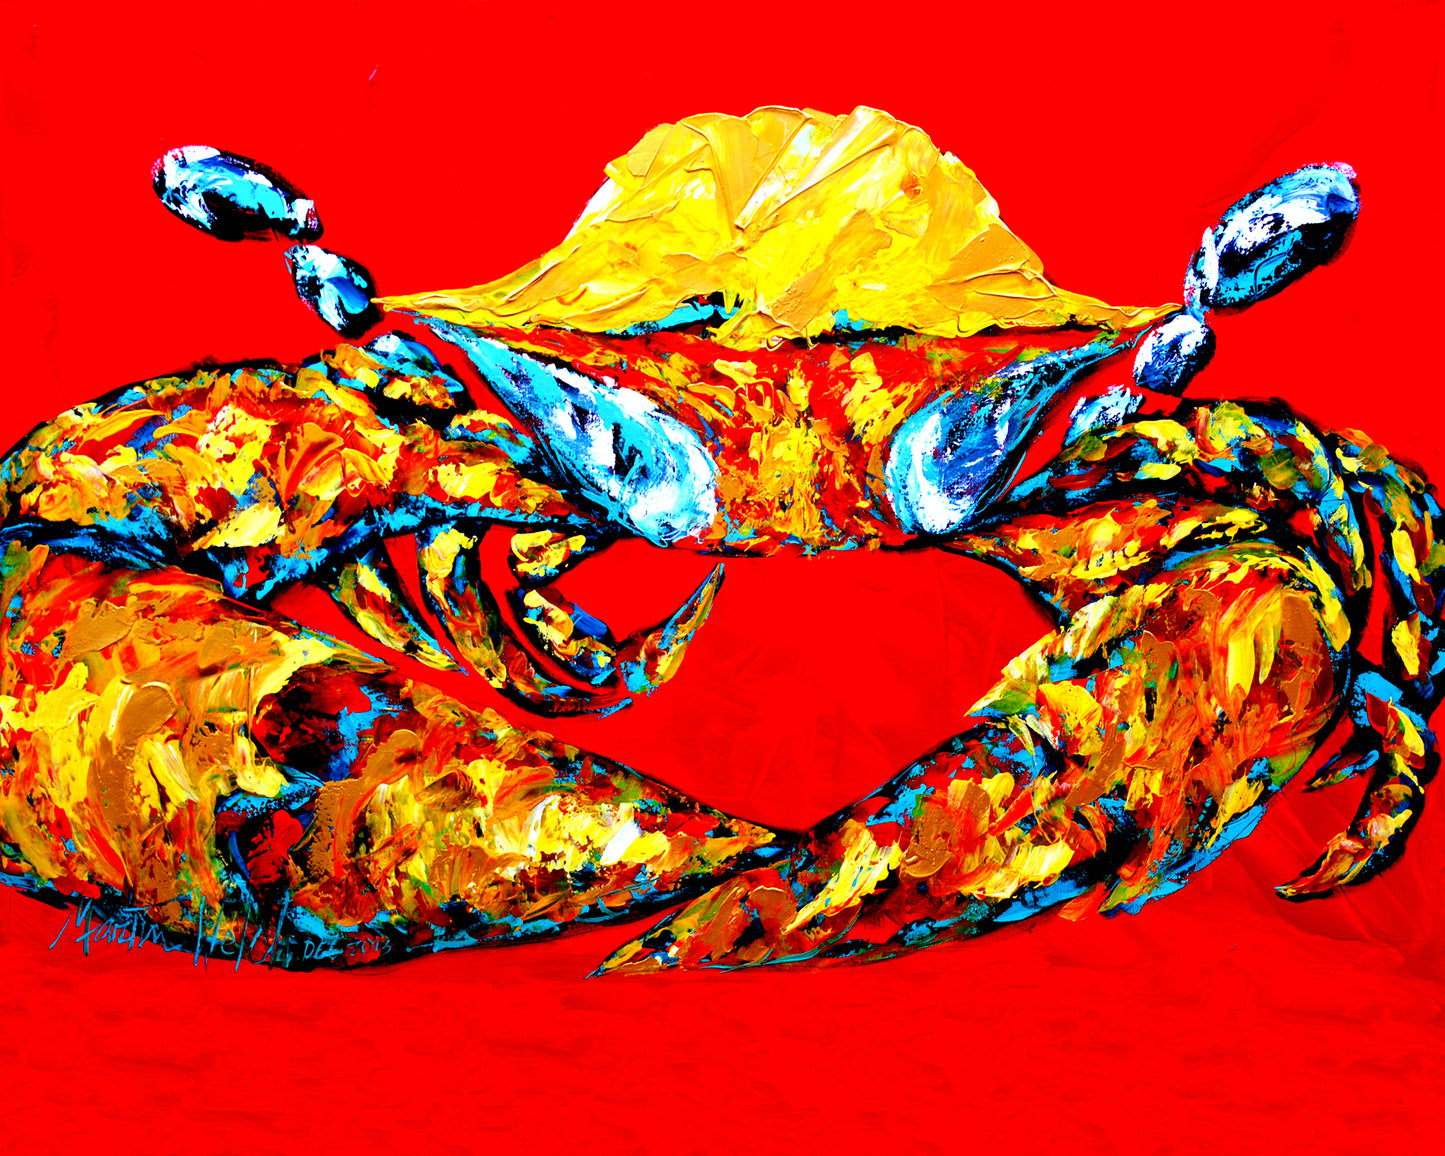 Fat and Sassy - Crab - 11"x14" Print